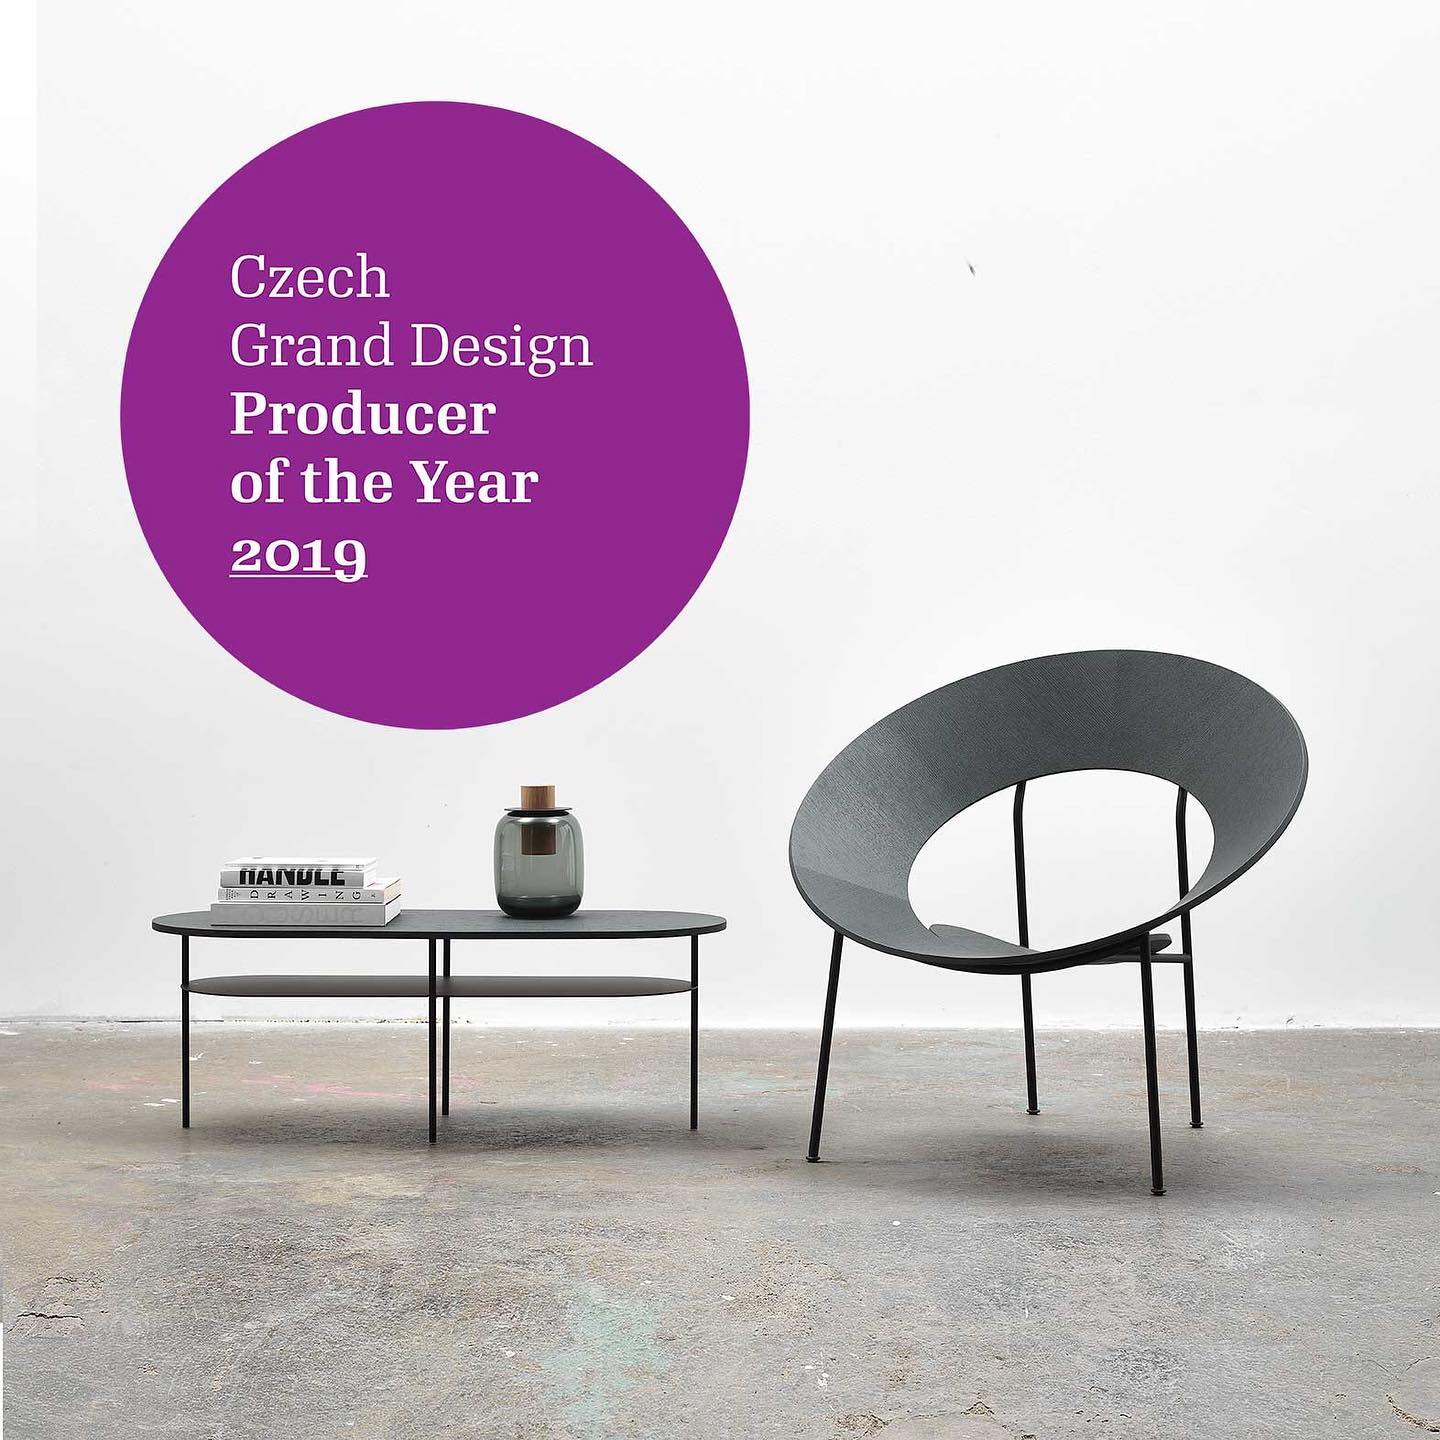 V roce 2020 získala značka Master & Master prestižní ocenění Výrobce roku Czech Grand Design